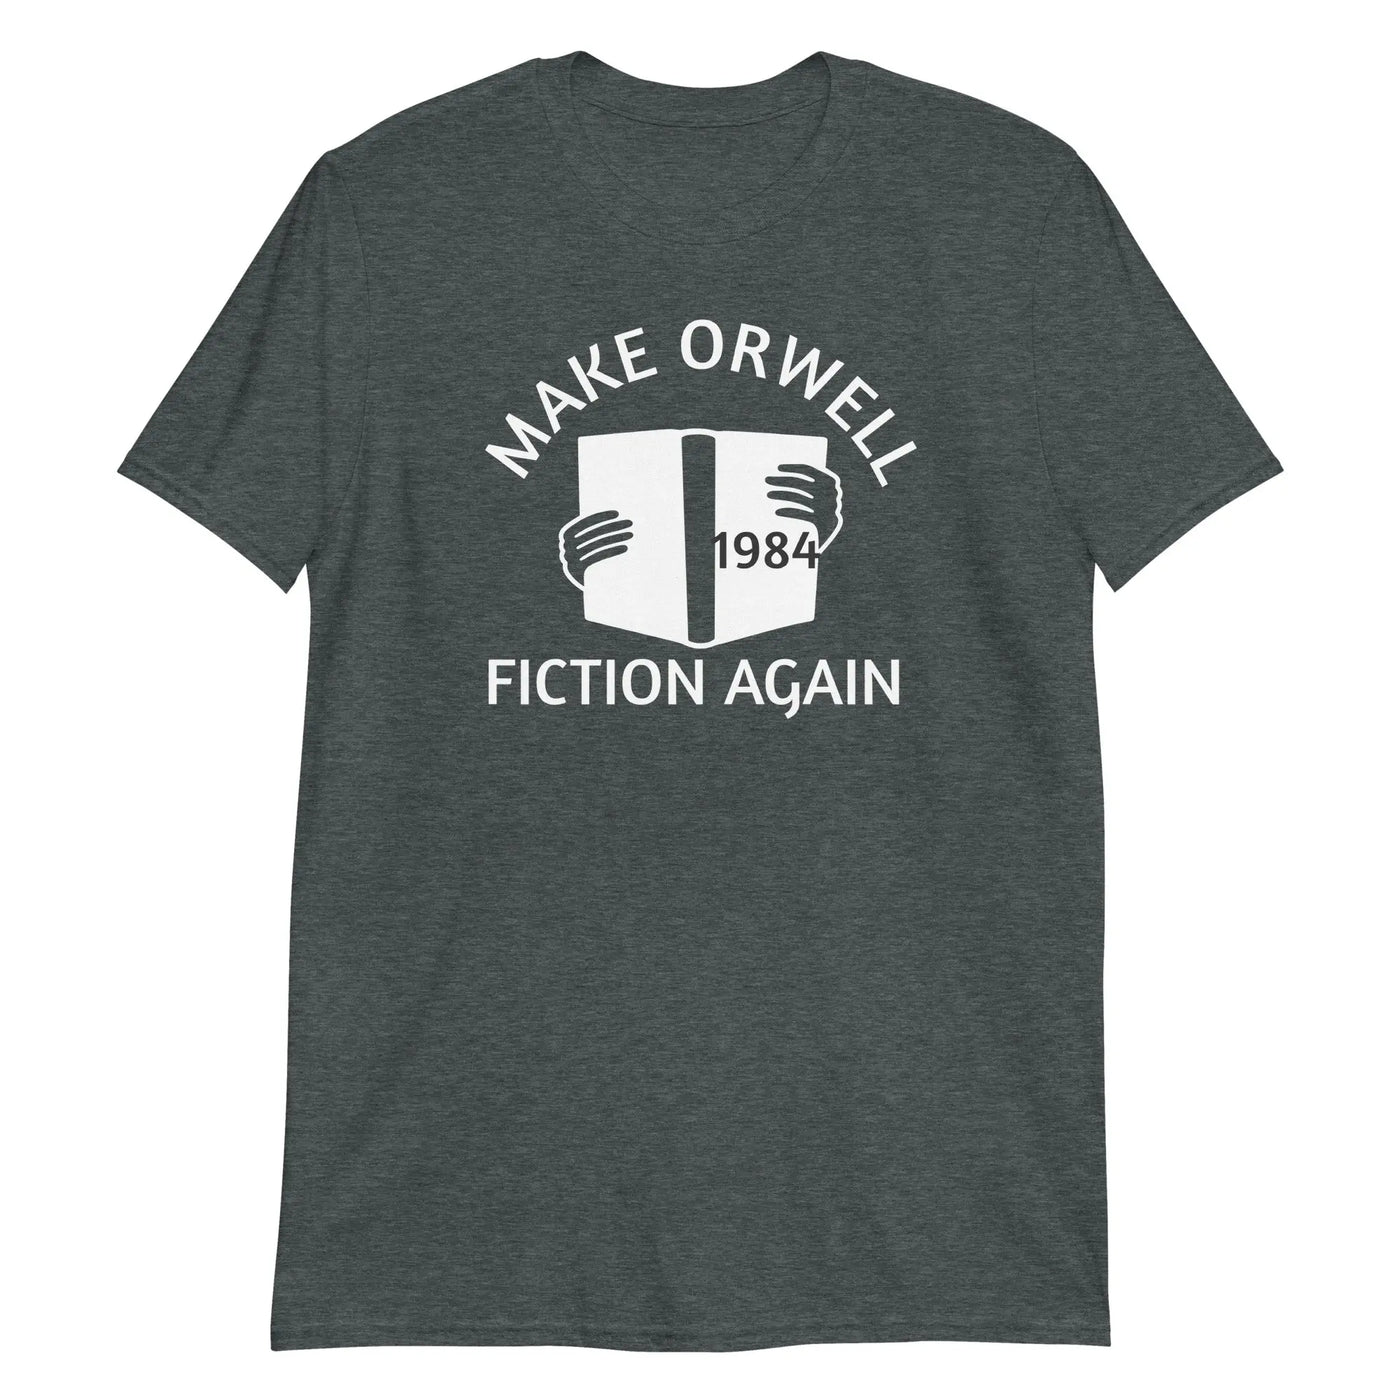 Fiction Again Unisex T-Shirt